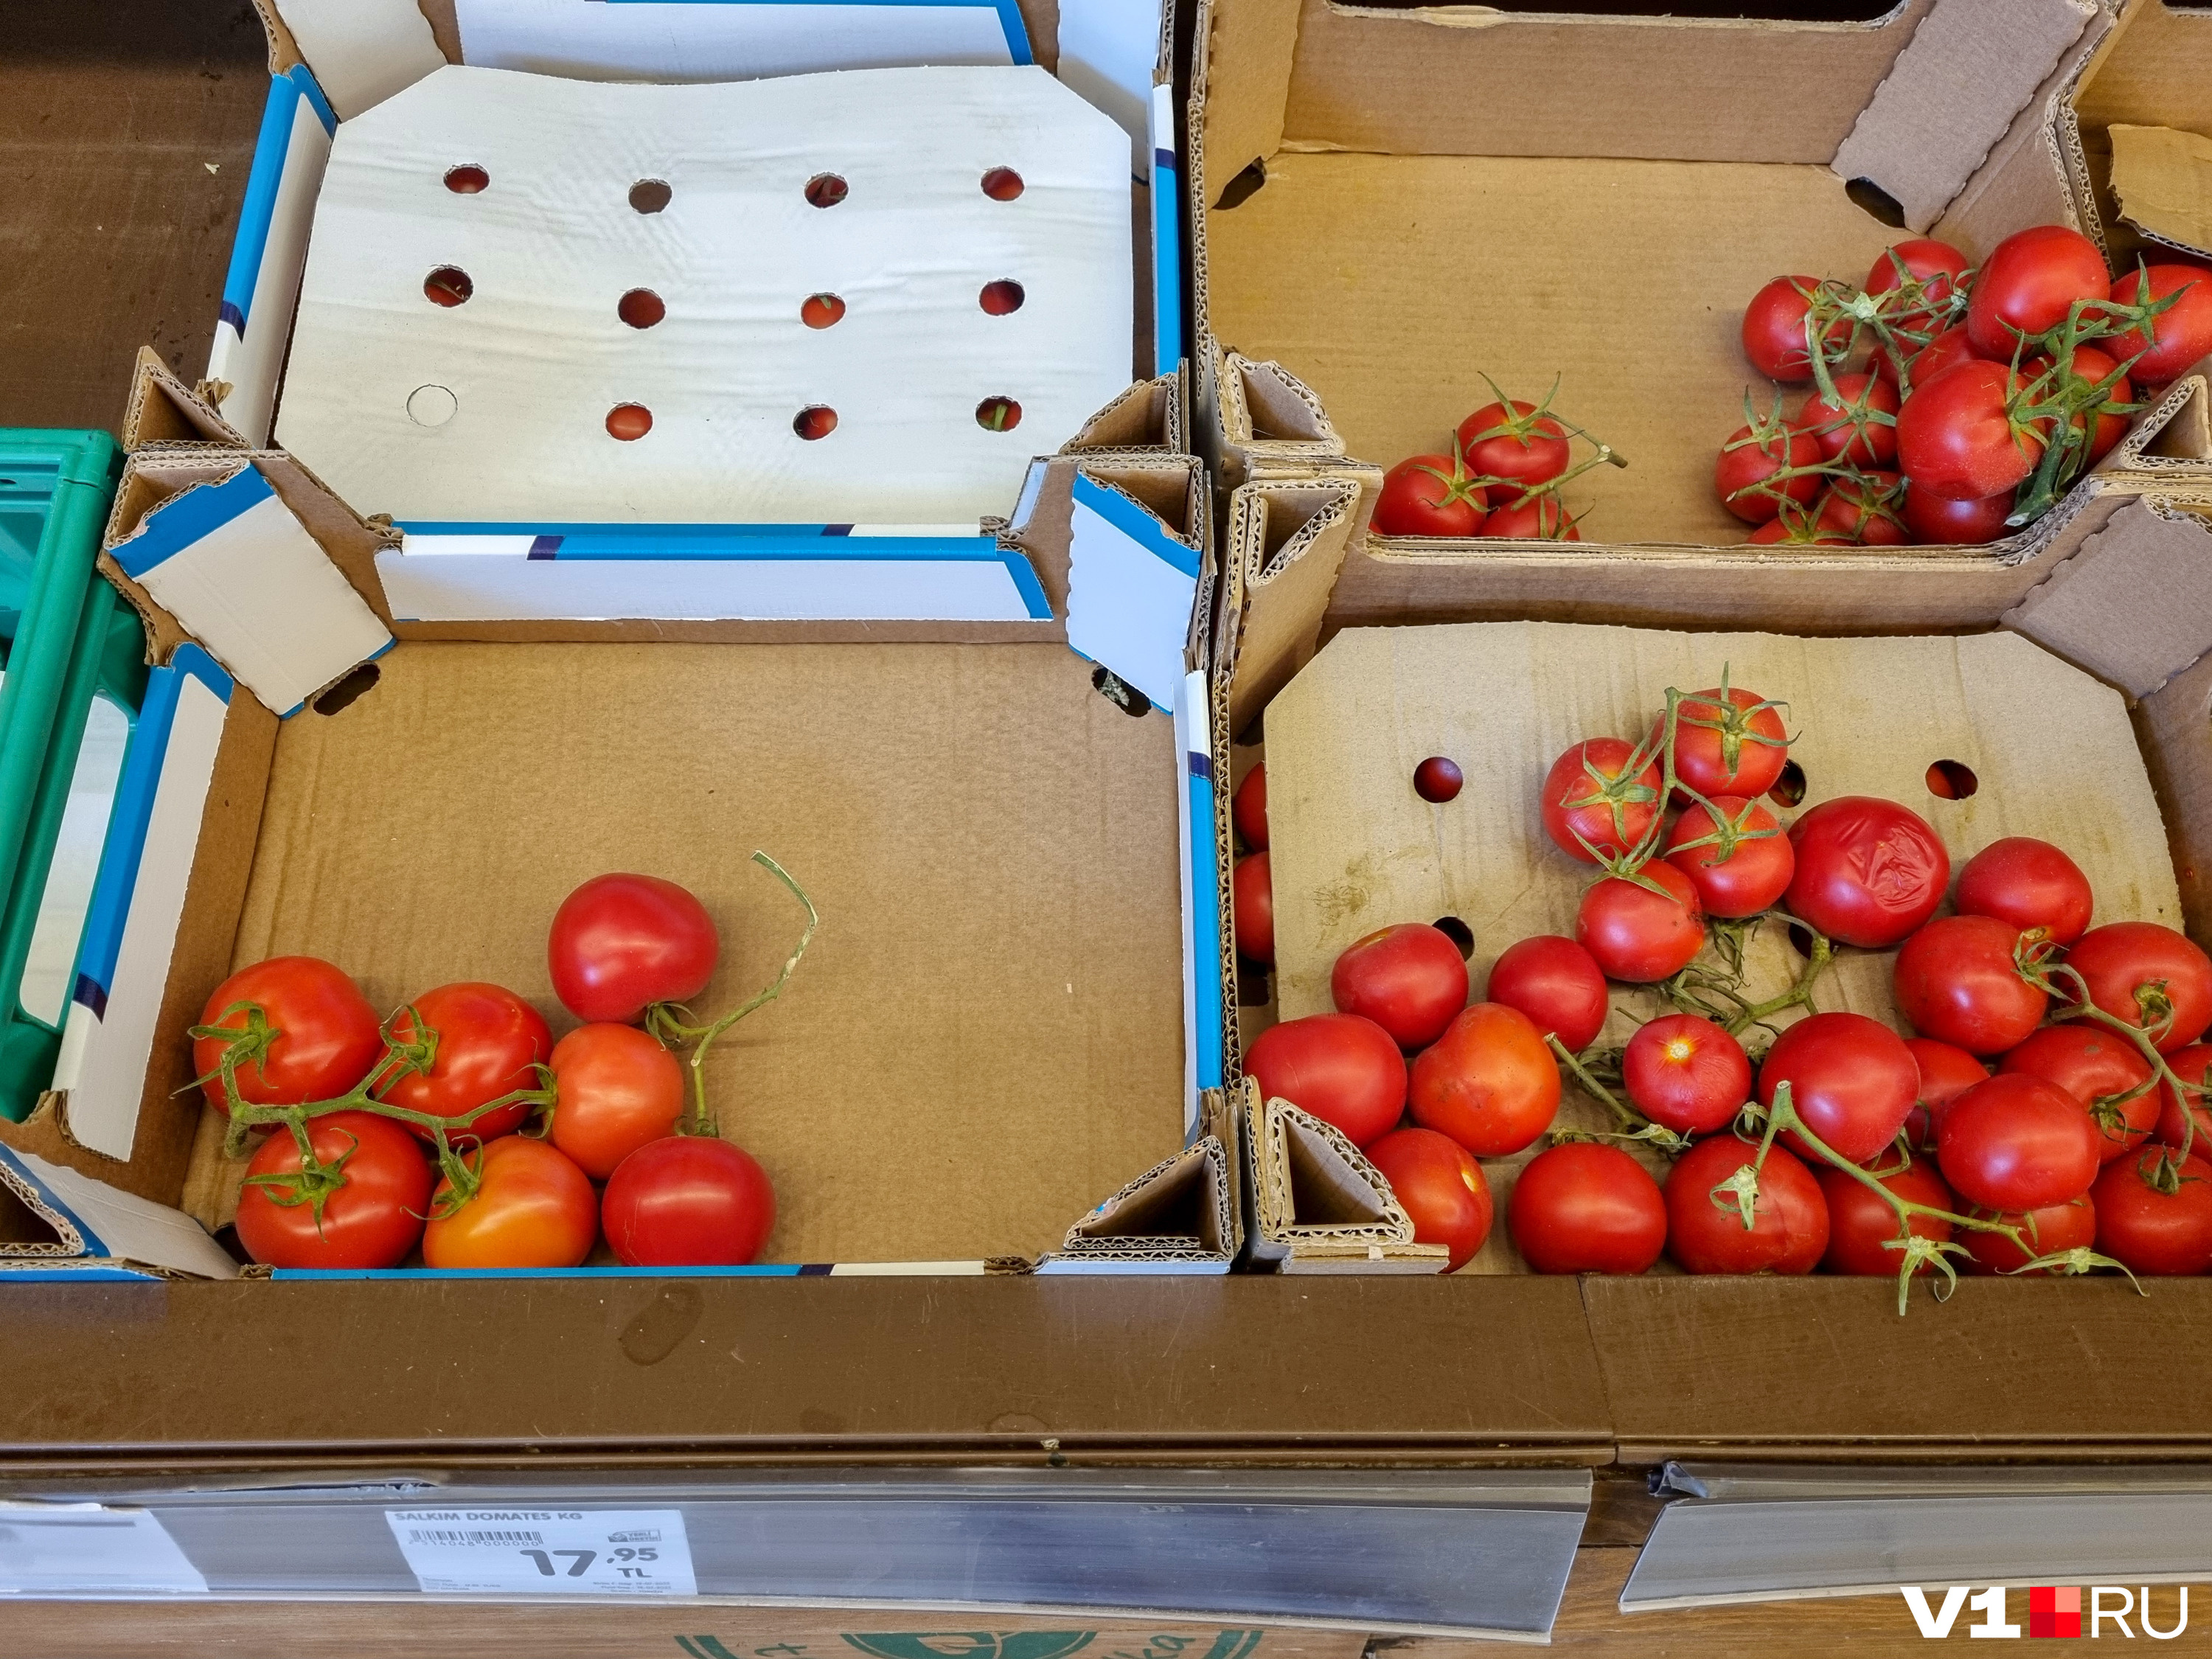 Важное отличие помидоров в Волгограде от турецких коллег — в Анталье они продаются с зеленым хвостиком